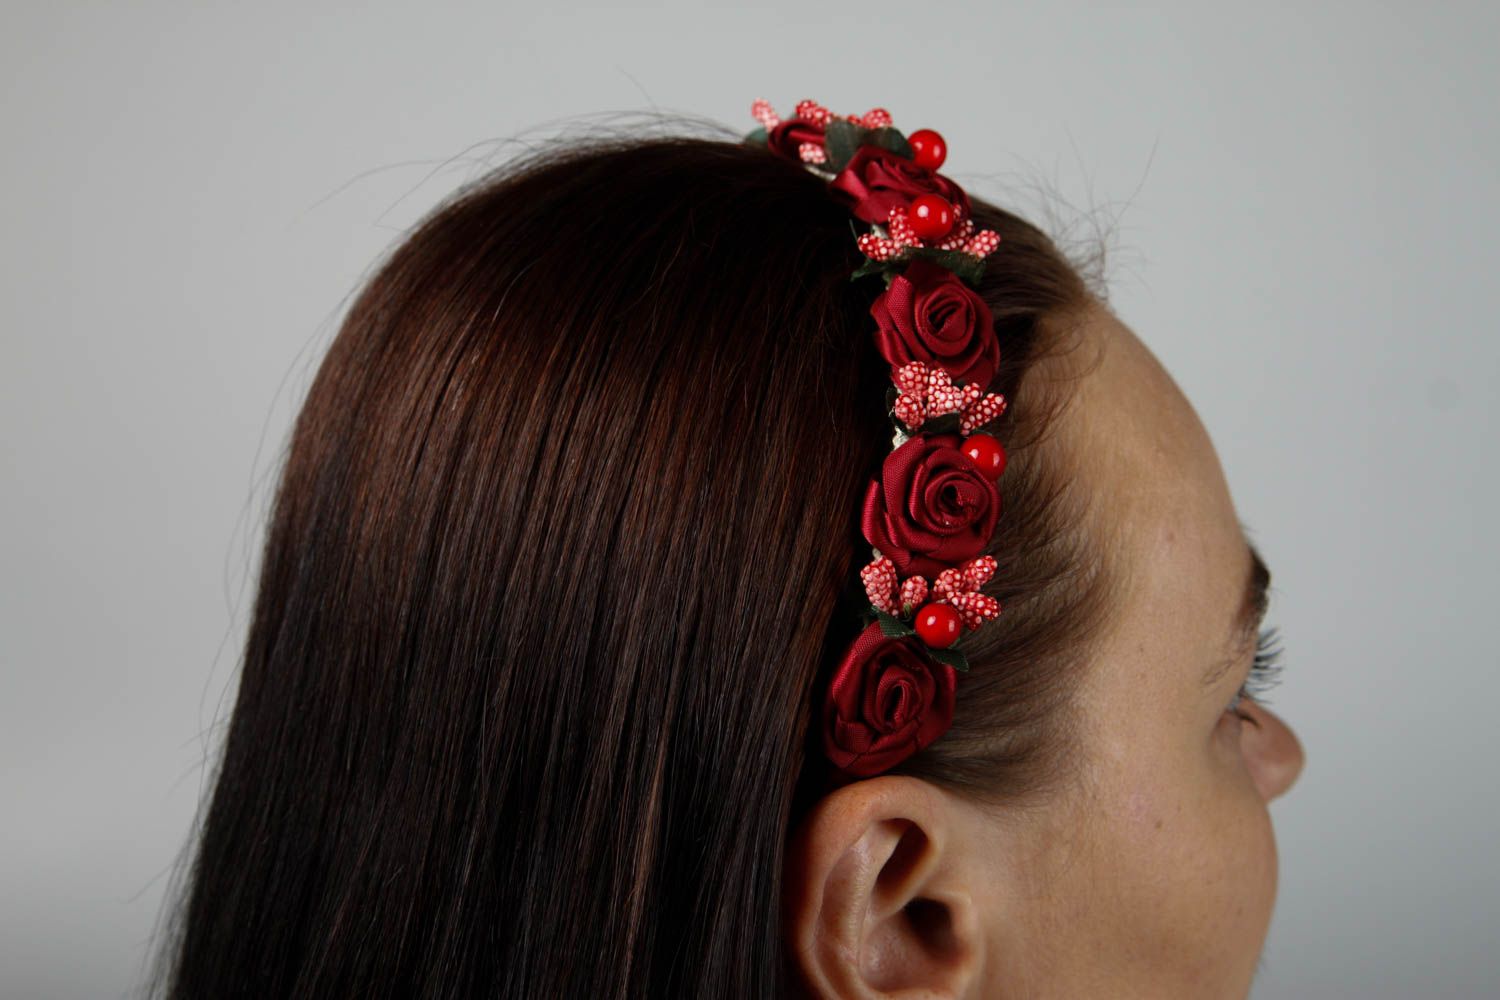 Обруч на голову ручной работы аксессуар для волос женский аксессуар Розы бордо фото 2